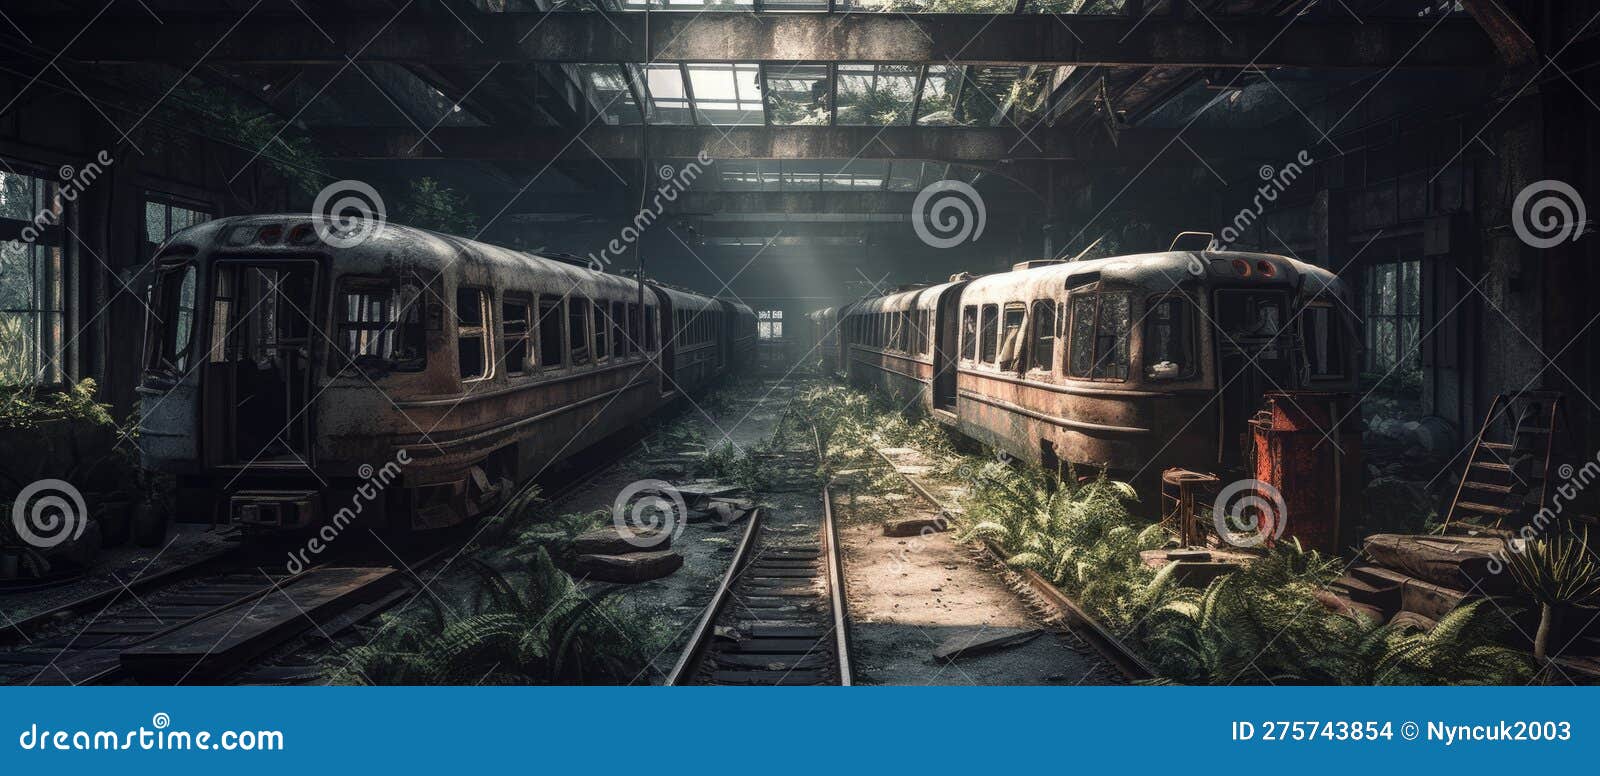 Realistic Post Apocalypse Landscape Illustration - Abandoned Cargo ...